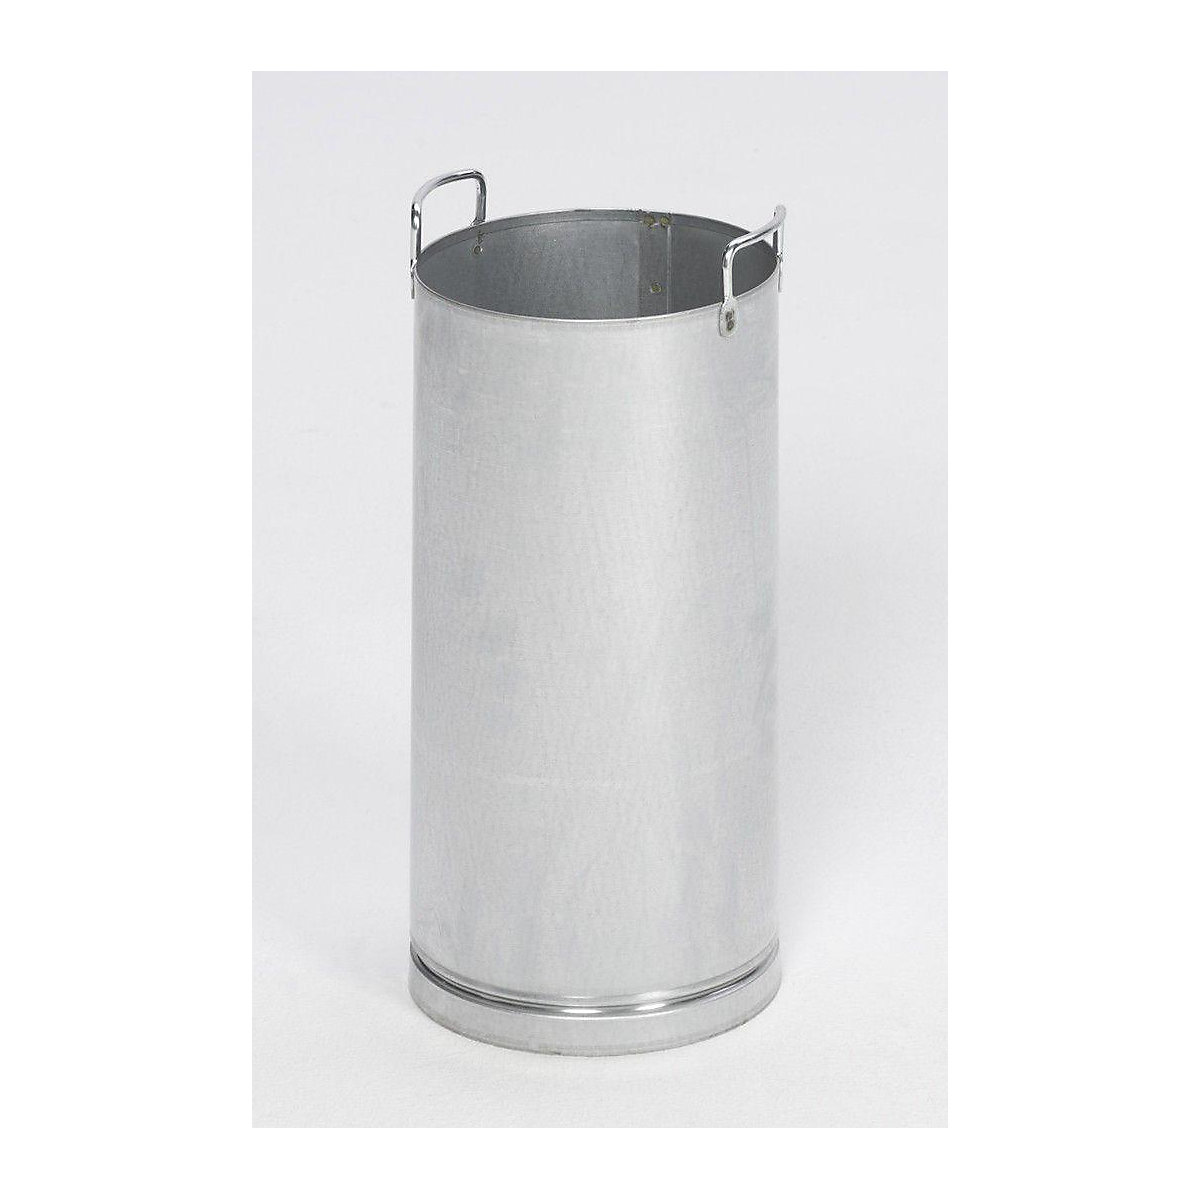 Inner bin for safety combination ashtray – VAR